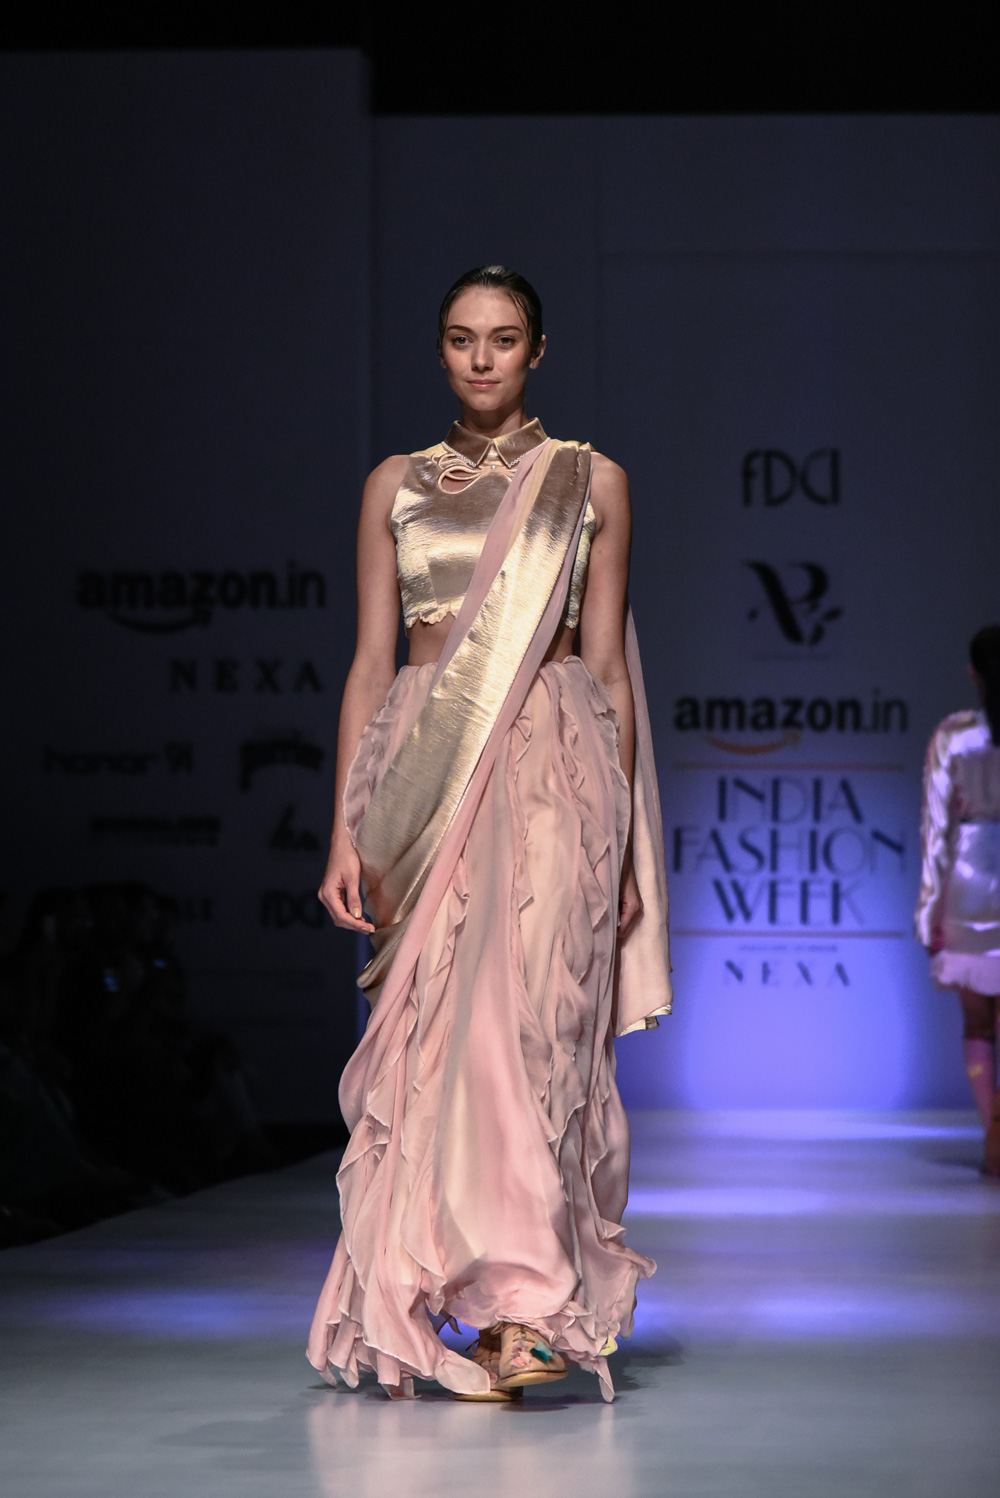 Archana Rao FDCI Amazon India Fashion Week Spring Summer 2018 Look 1